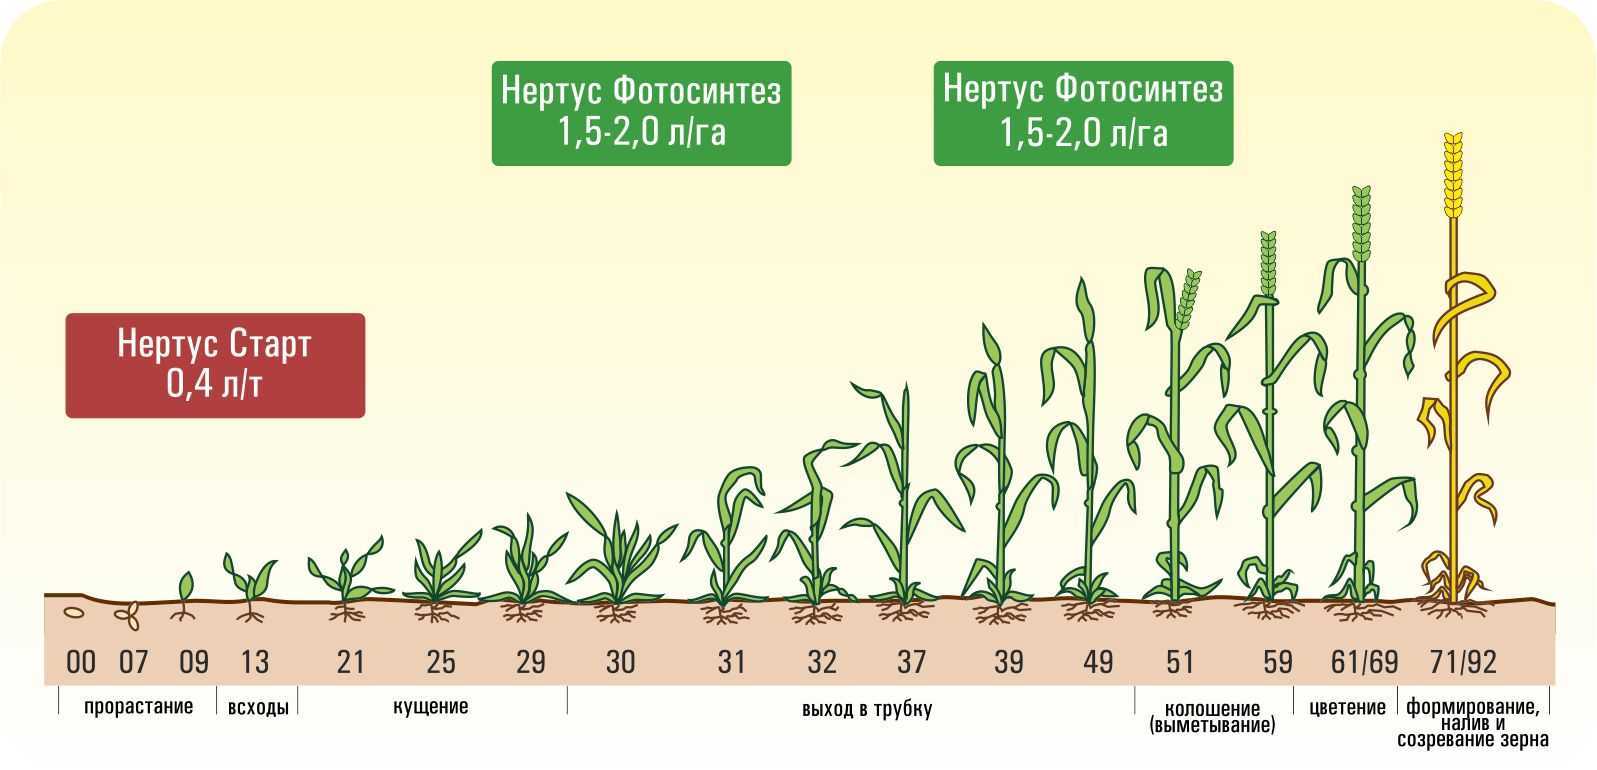 Фазы роста зерновых культур и их характеристика